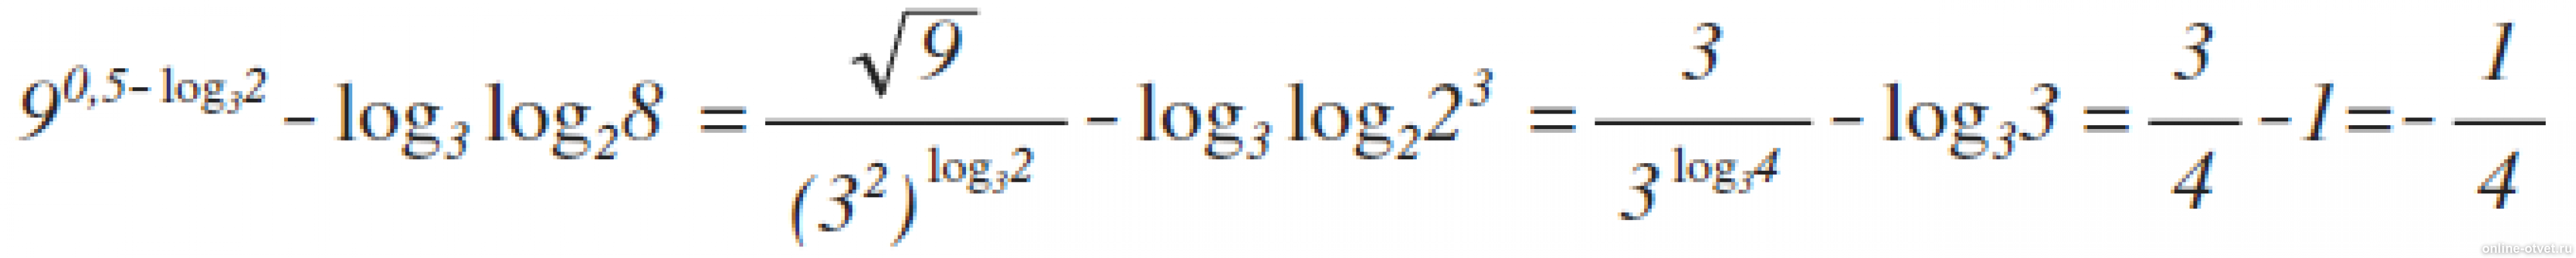 9 В степени 0.5 log 3 2 log3. Лог x по основанию корень из 3. Log 25 по основанию корень из 2. Log2 log2 корень 4 степени из 2.